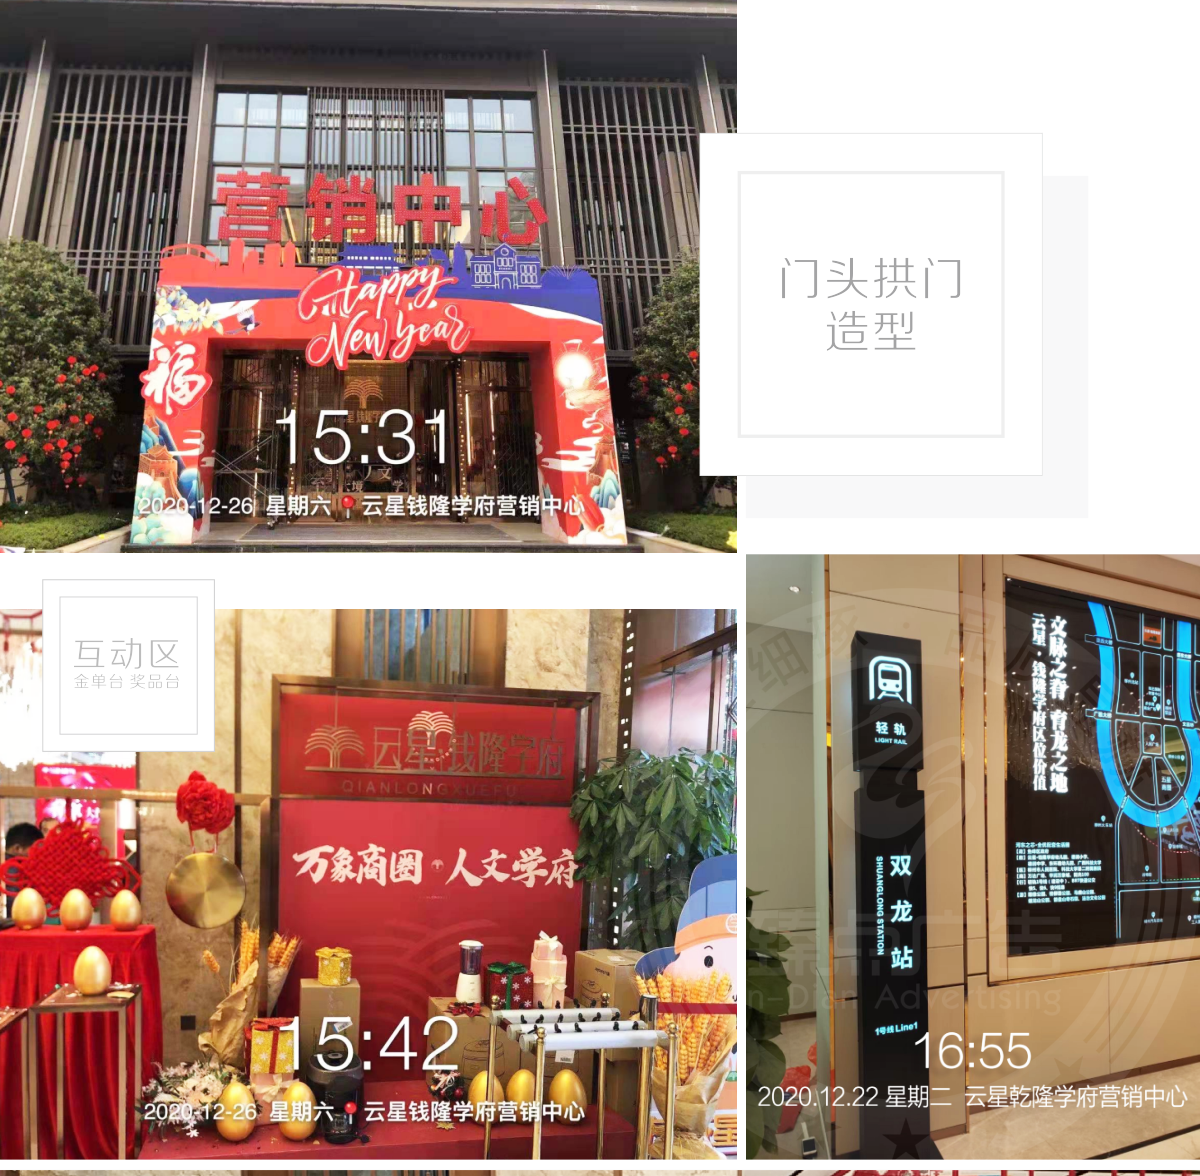 柳州云星錢隆學府營銷中心廣告策劃設計制作紅包墻,造型拱門,新春活動包裝_01.png